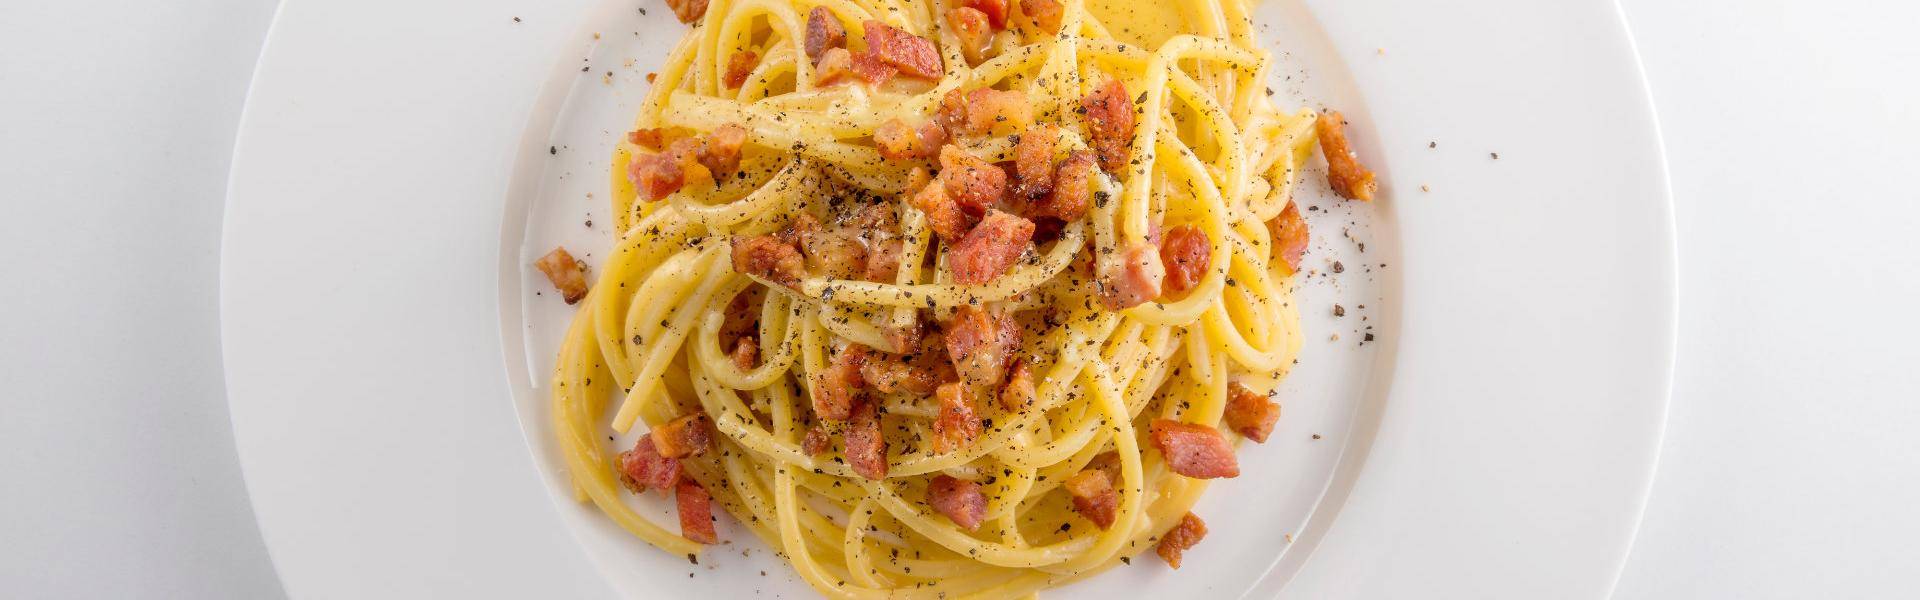 La ricetta degli spaghetti alla carbonara è tipica del Lazio ed è apprezzata in tutto il mondo grazie alla sua semplicità